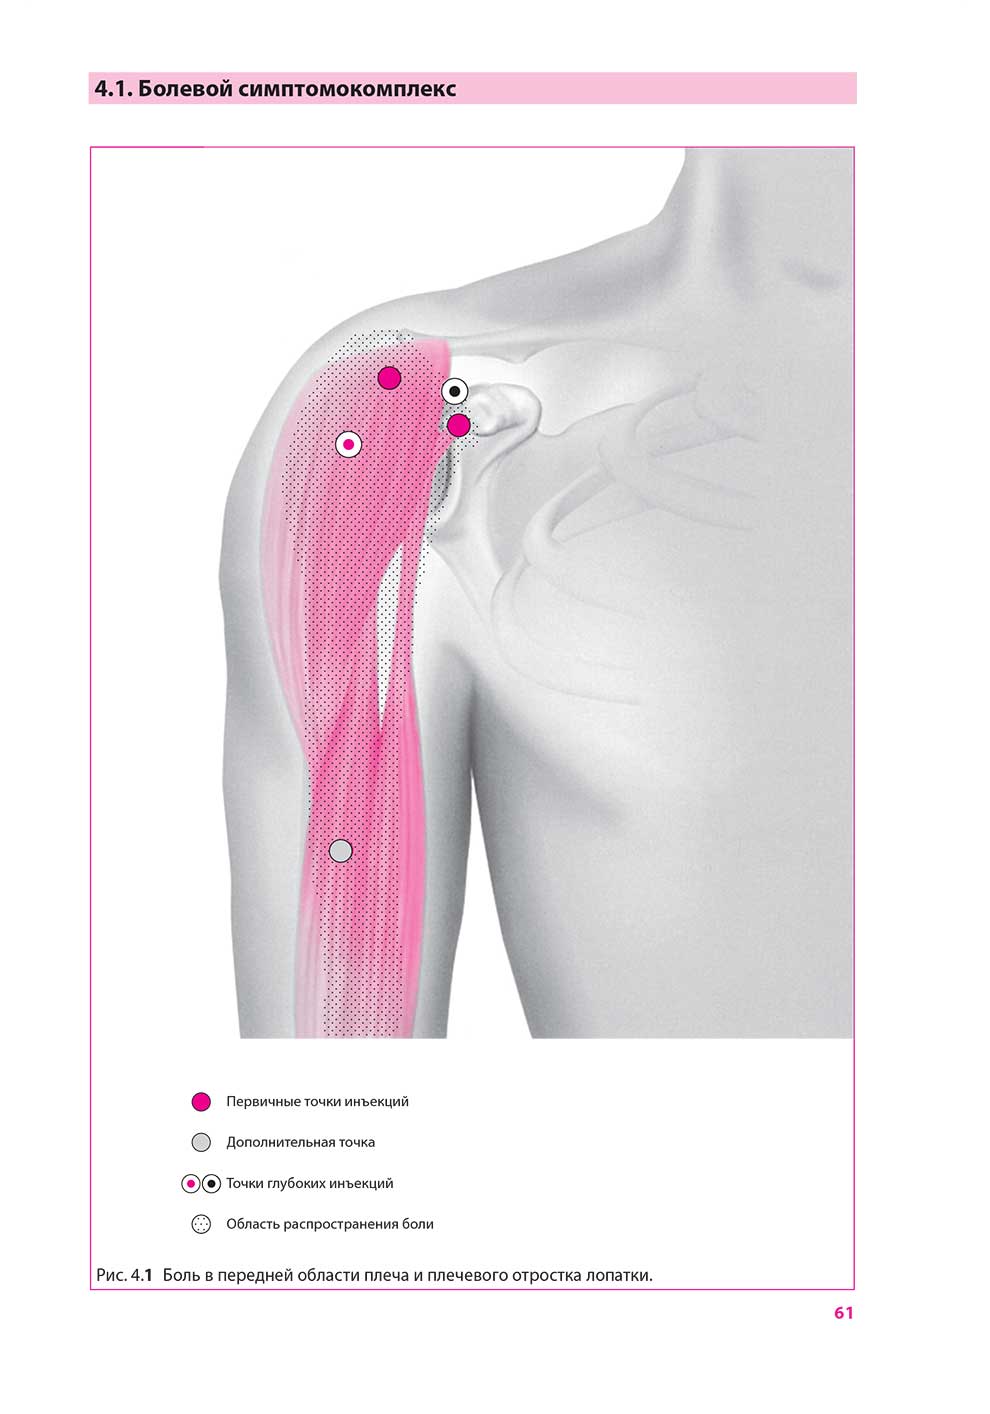 Боль в передней области плеча и плечевого отростка лопатки